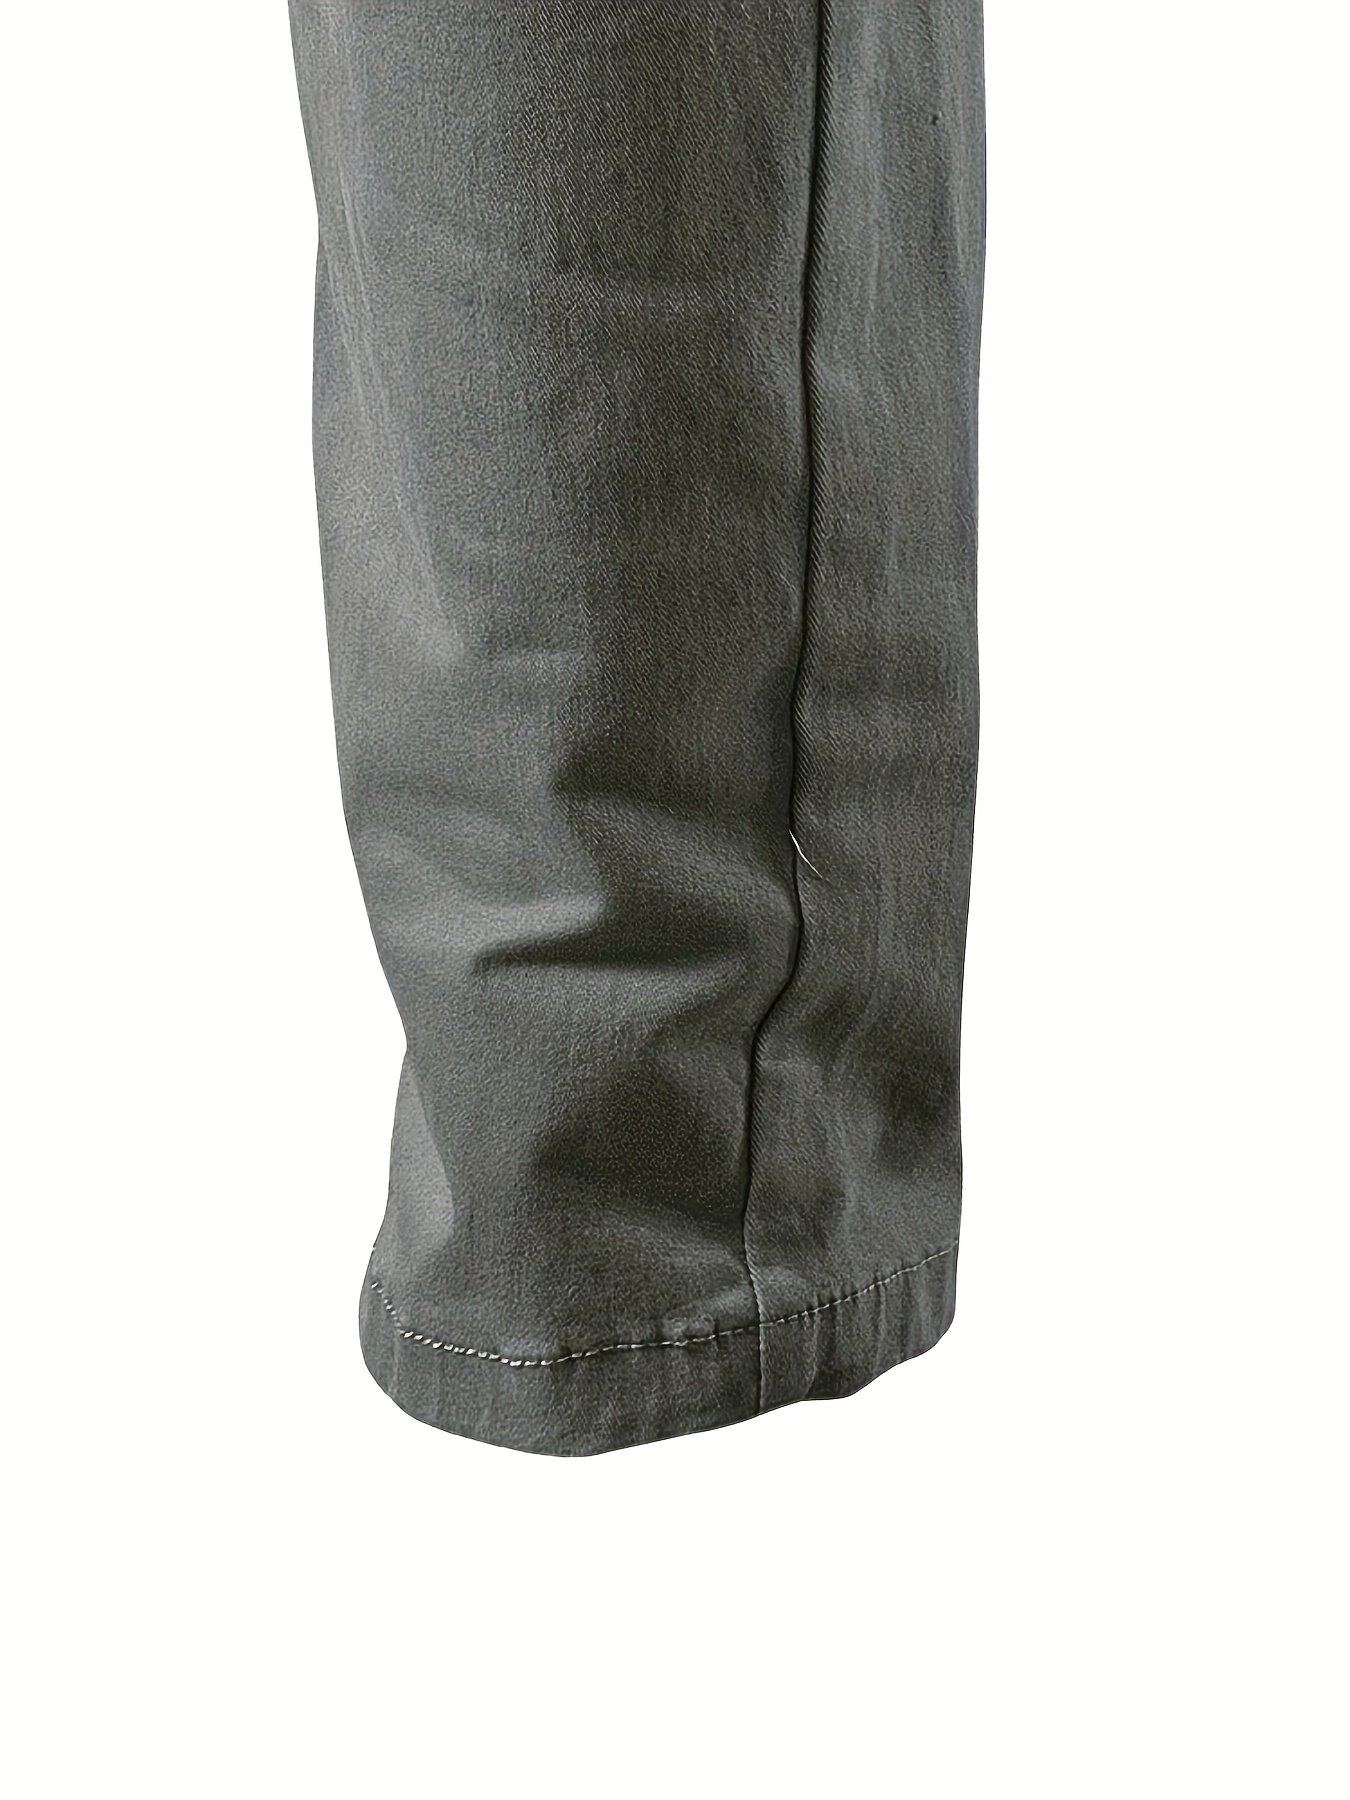 Patagonia Hampi Rock Pants - Casual Trousers Men's